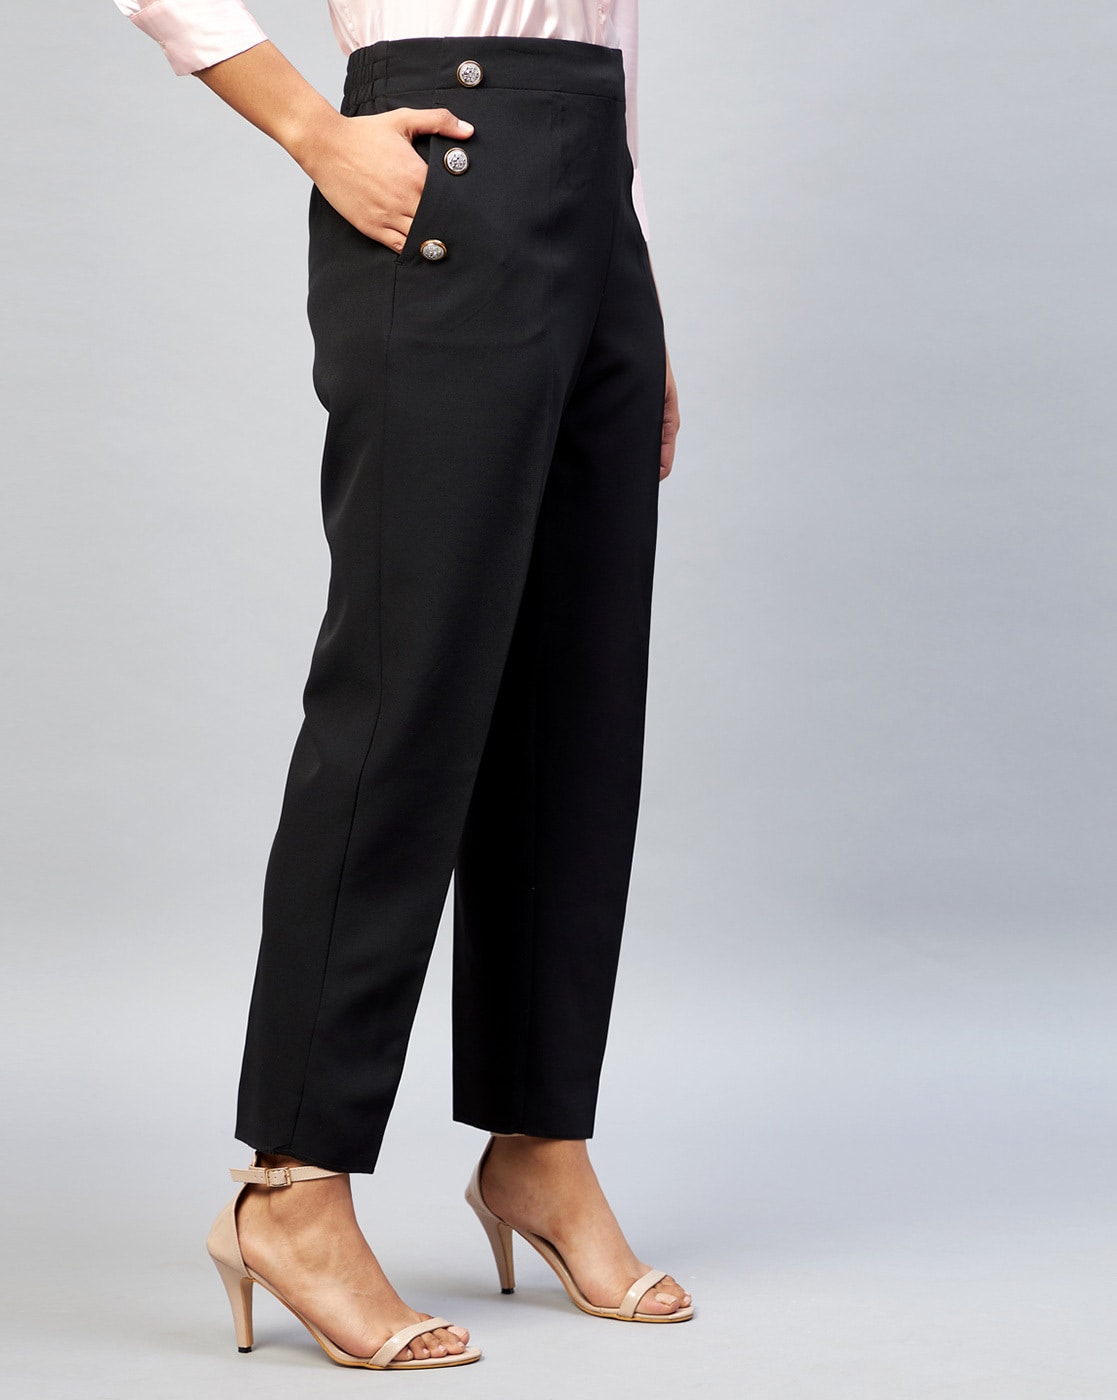 Zara high waisted pants grey | Moda ropa de trabajo, Ropa, Ropa de moda